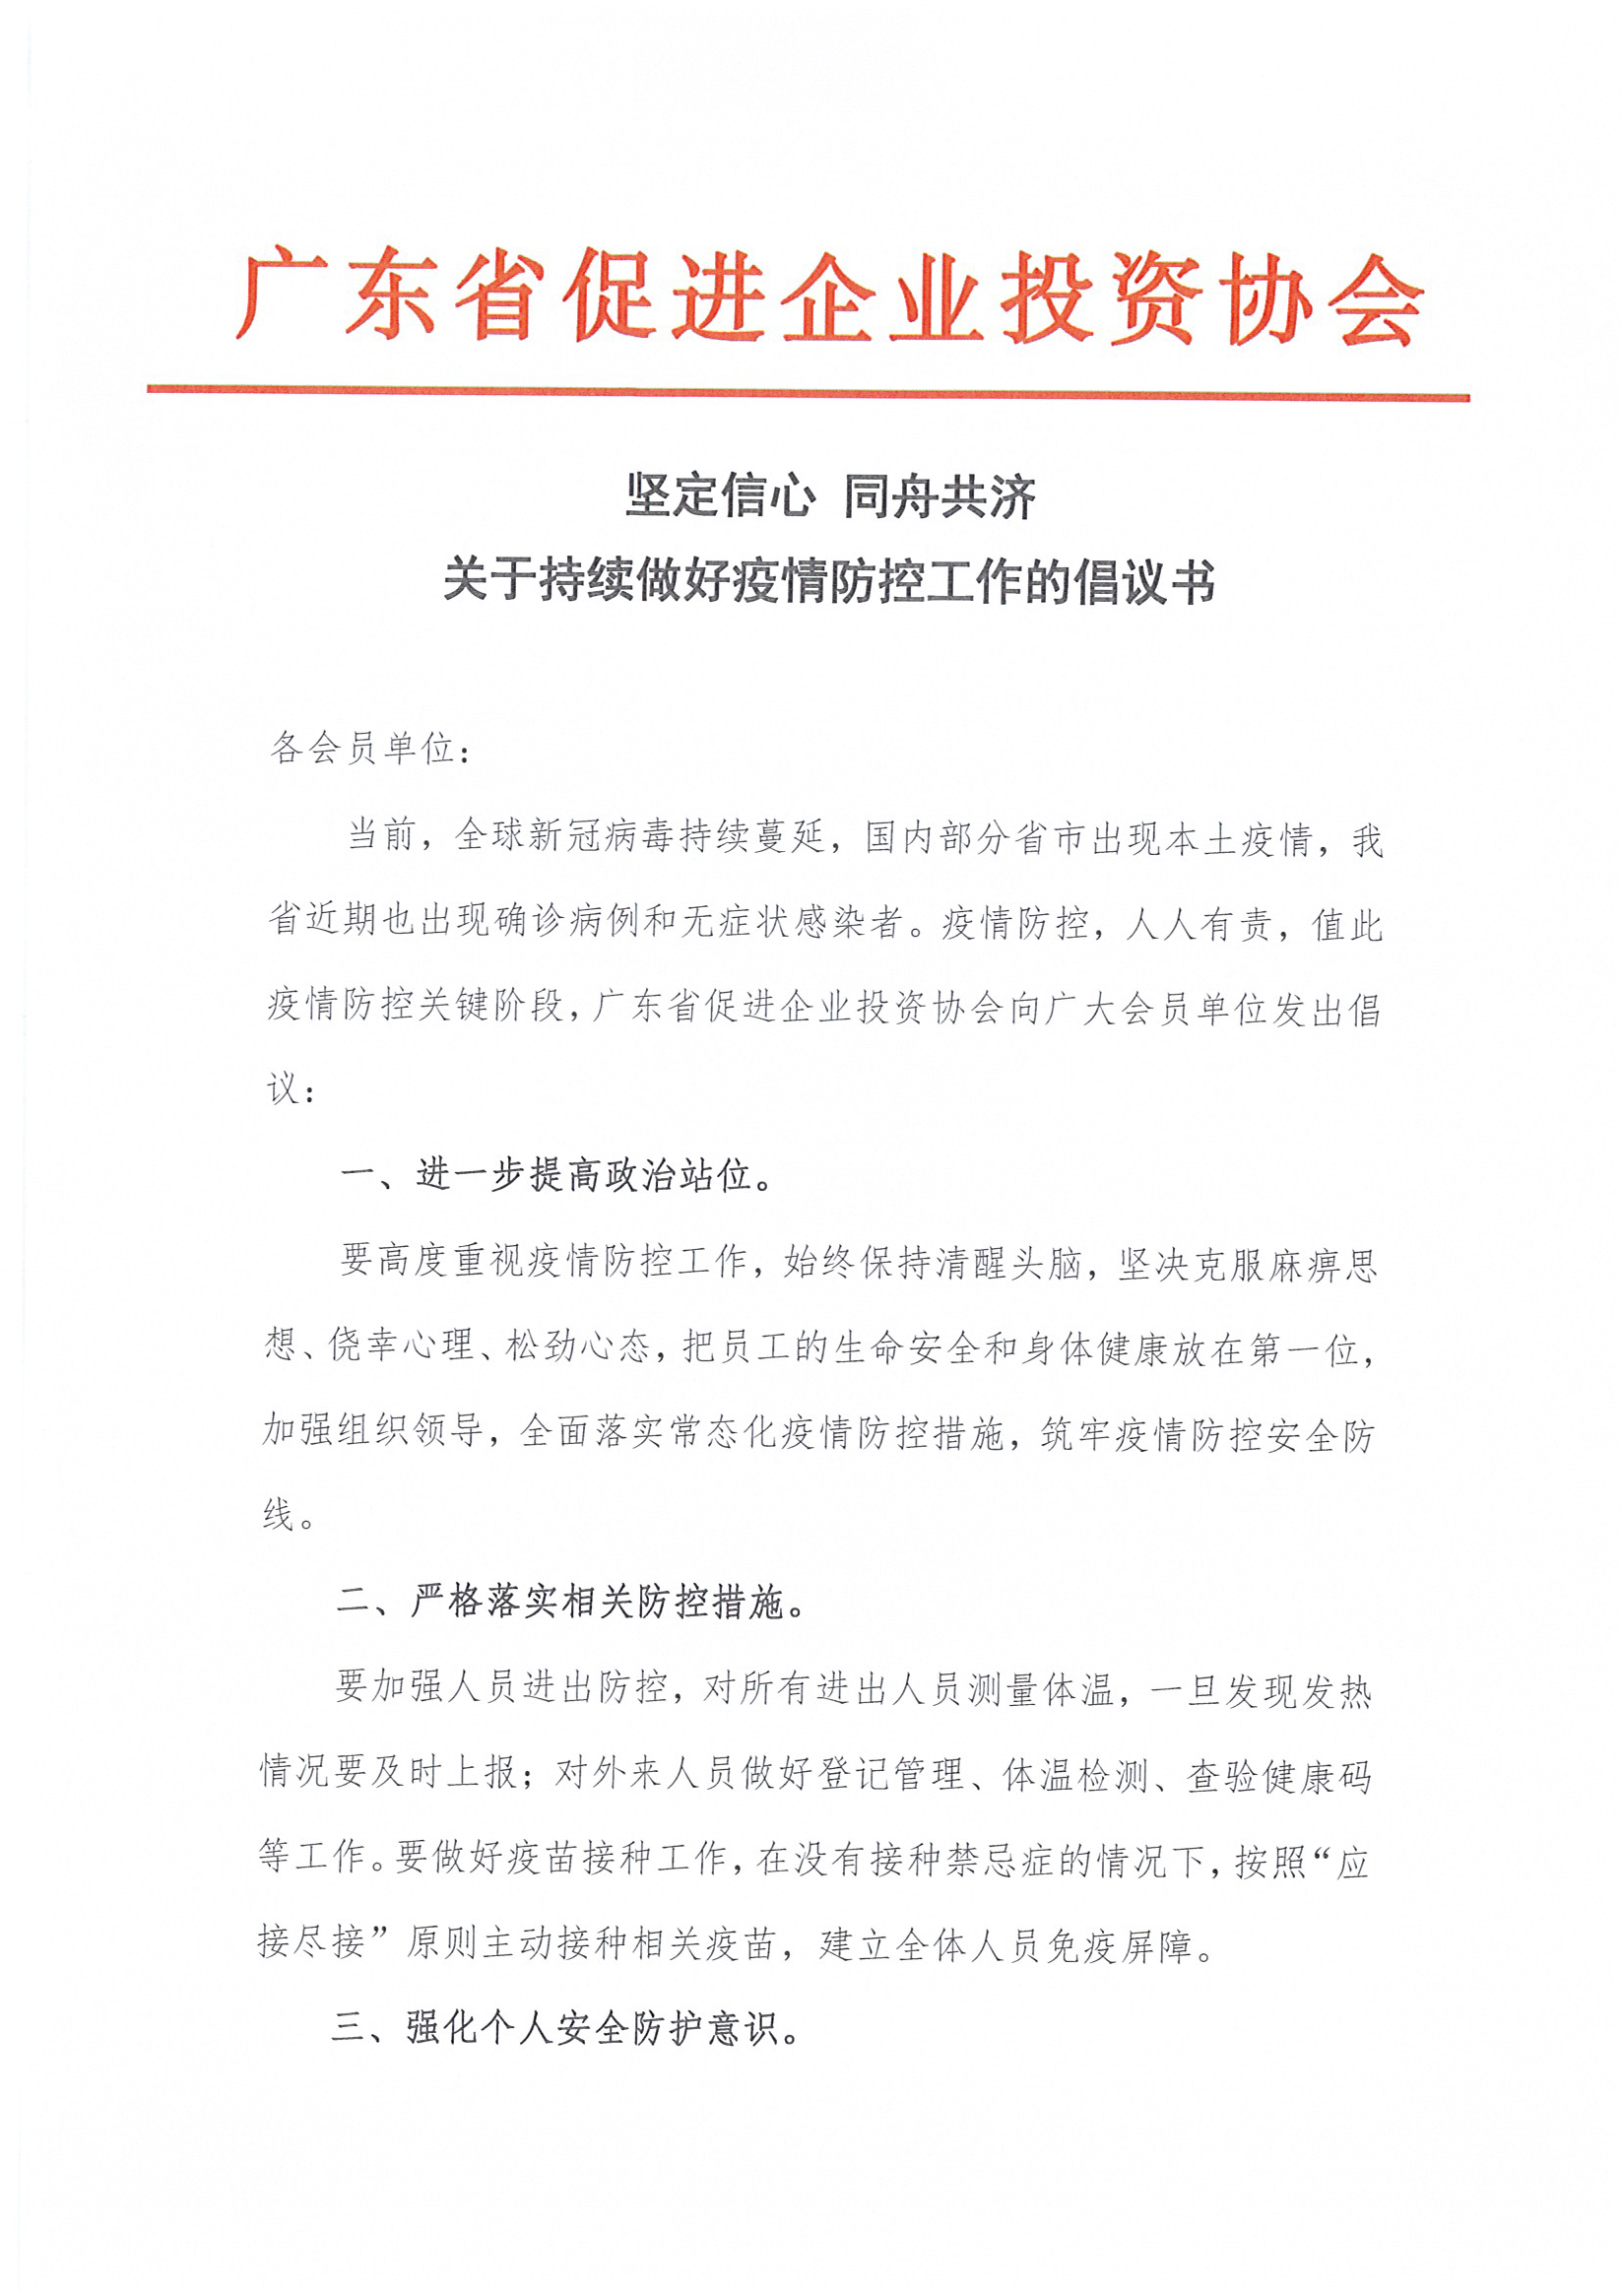 广东省促进企业投资协会关于持续做好疫情防控工作的倡议书 (1).jpg